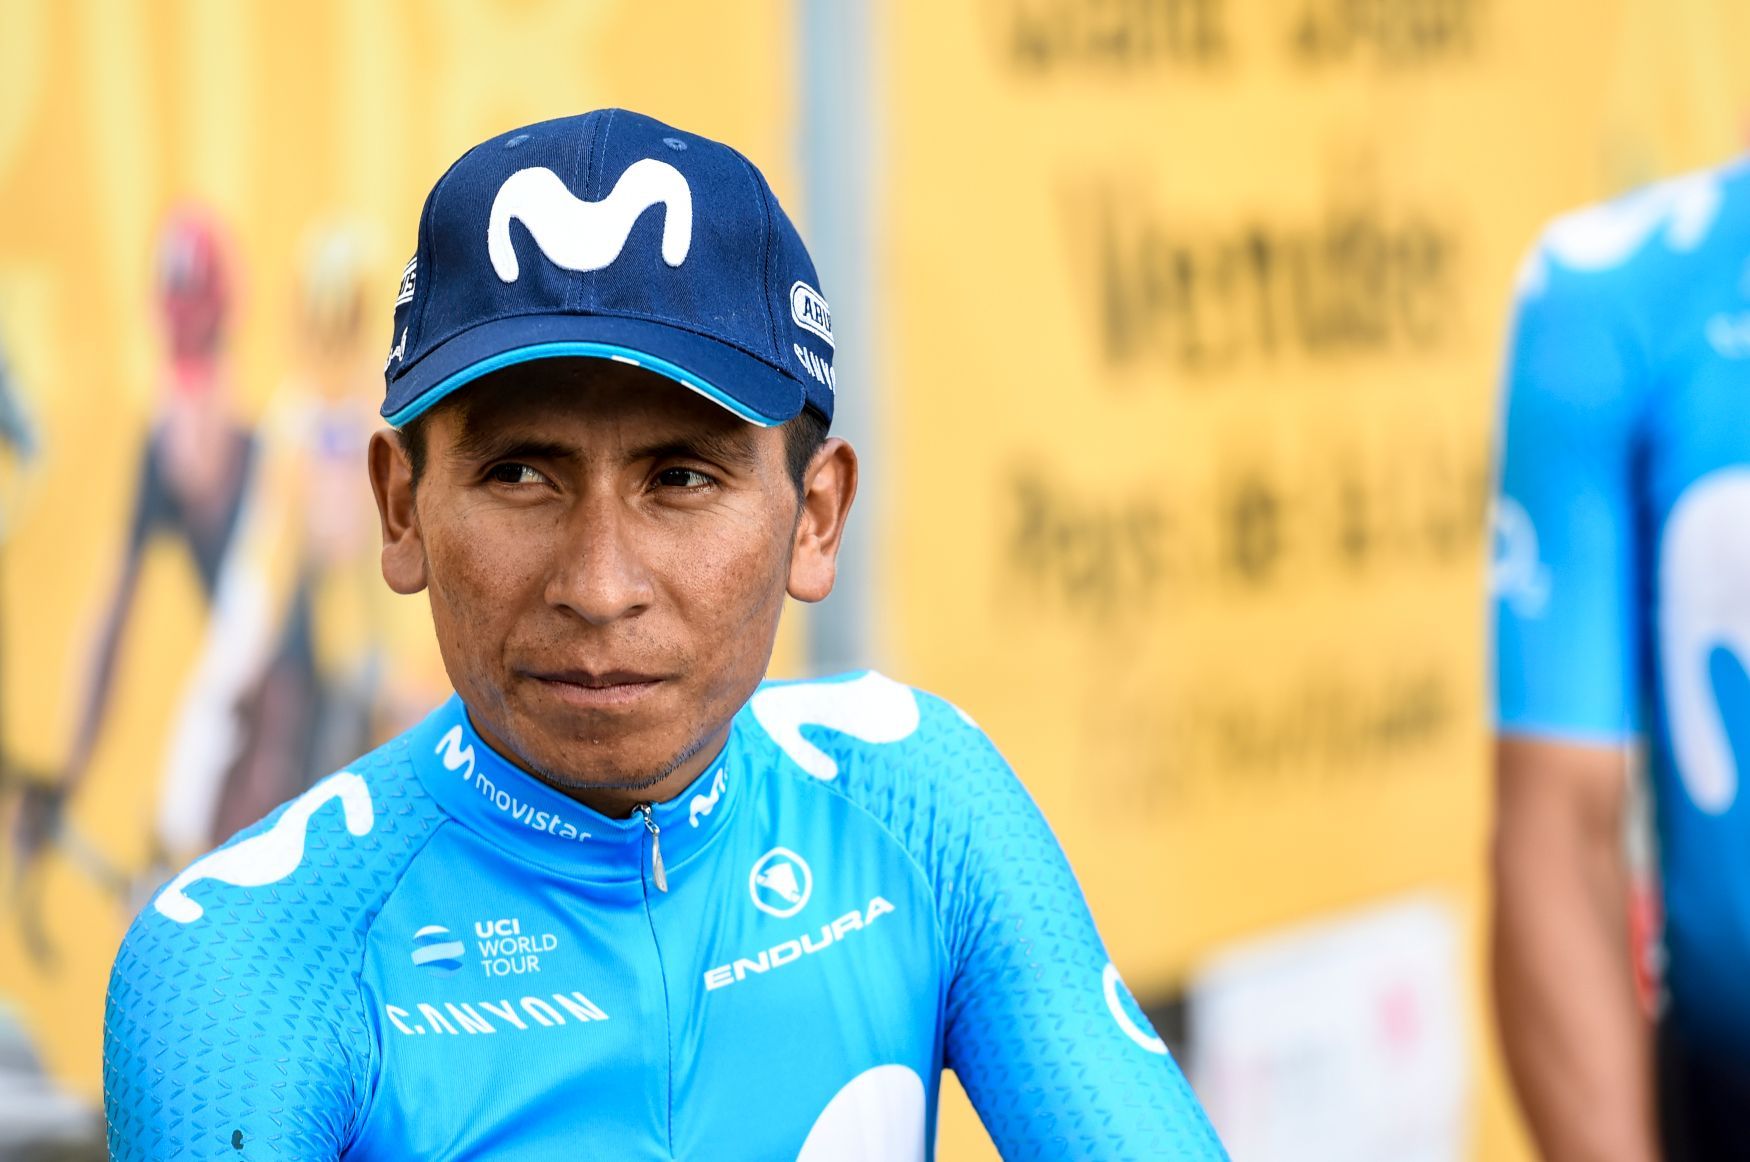 Tour de France 2018: Nairo Quintana